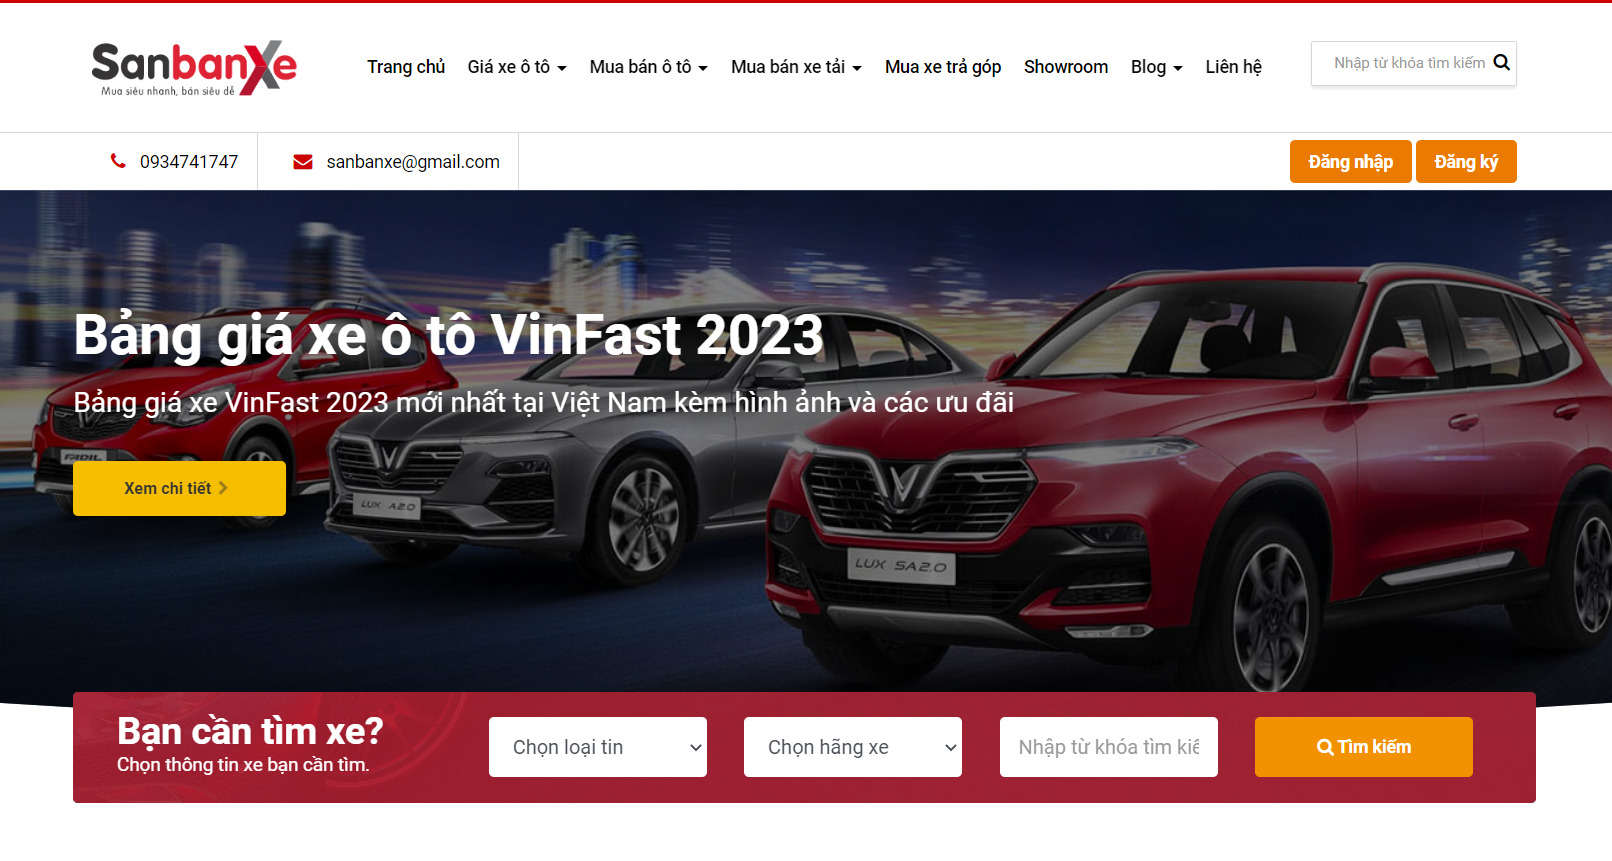 sanbanxe.vn là website rao bán ô tô và cập nhật giá cả nhanh chóng